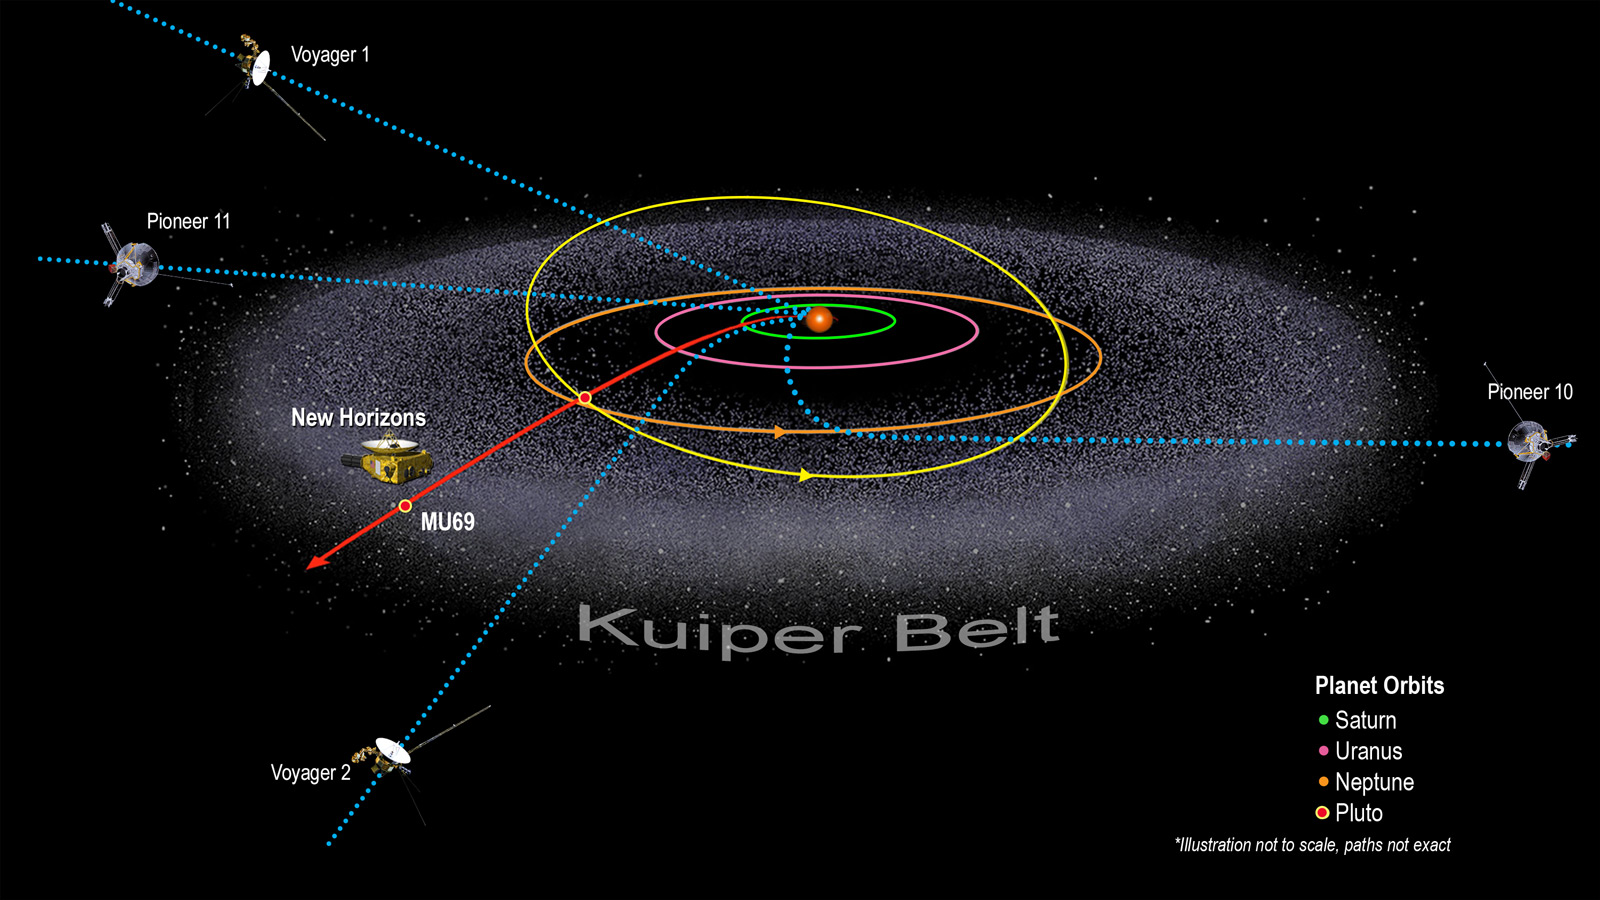 Hình minh họa các địa điểm Vành đai Kuiper và Tàu vũ trụ